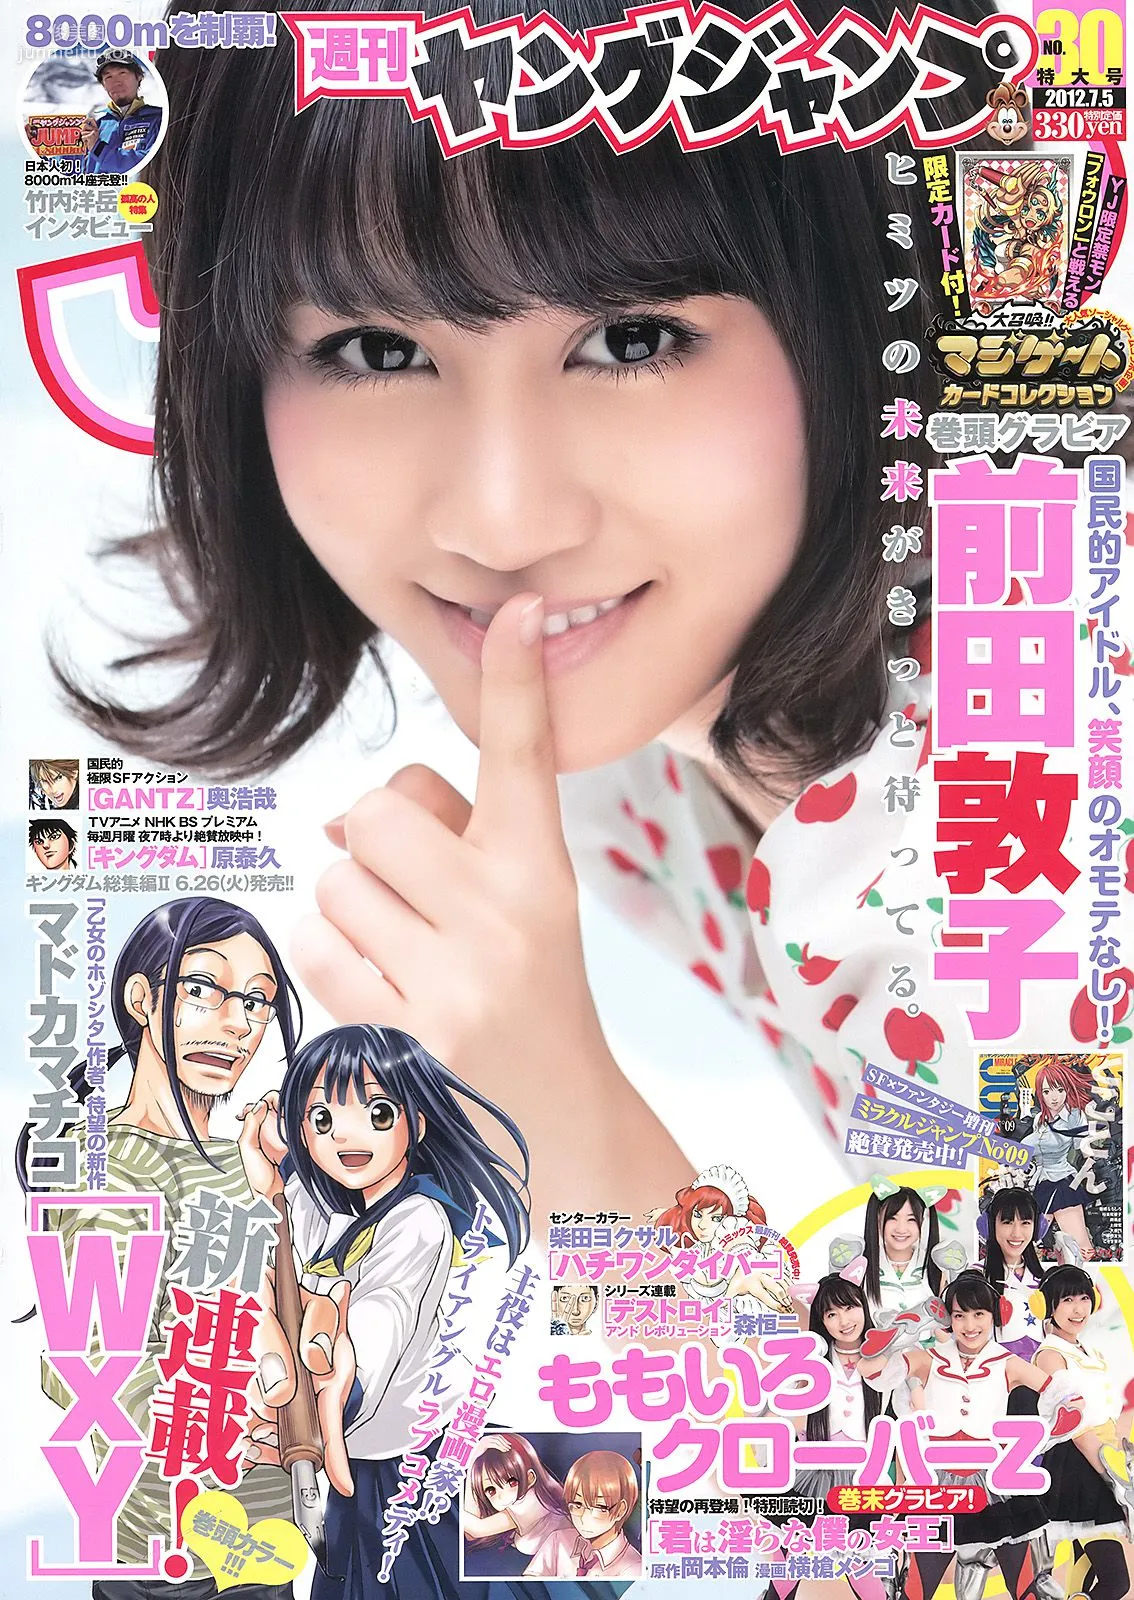 前田敦子 ももいろクローバーZ [Weekly Young Jump] 2012年No.30 写真杂志1